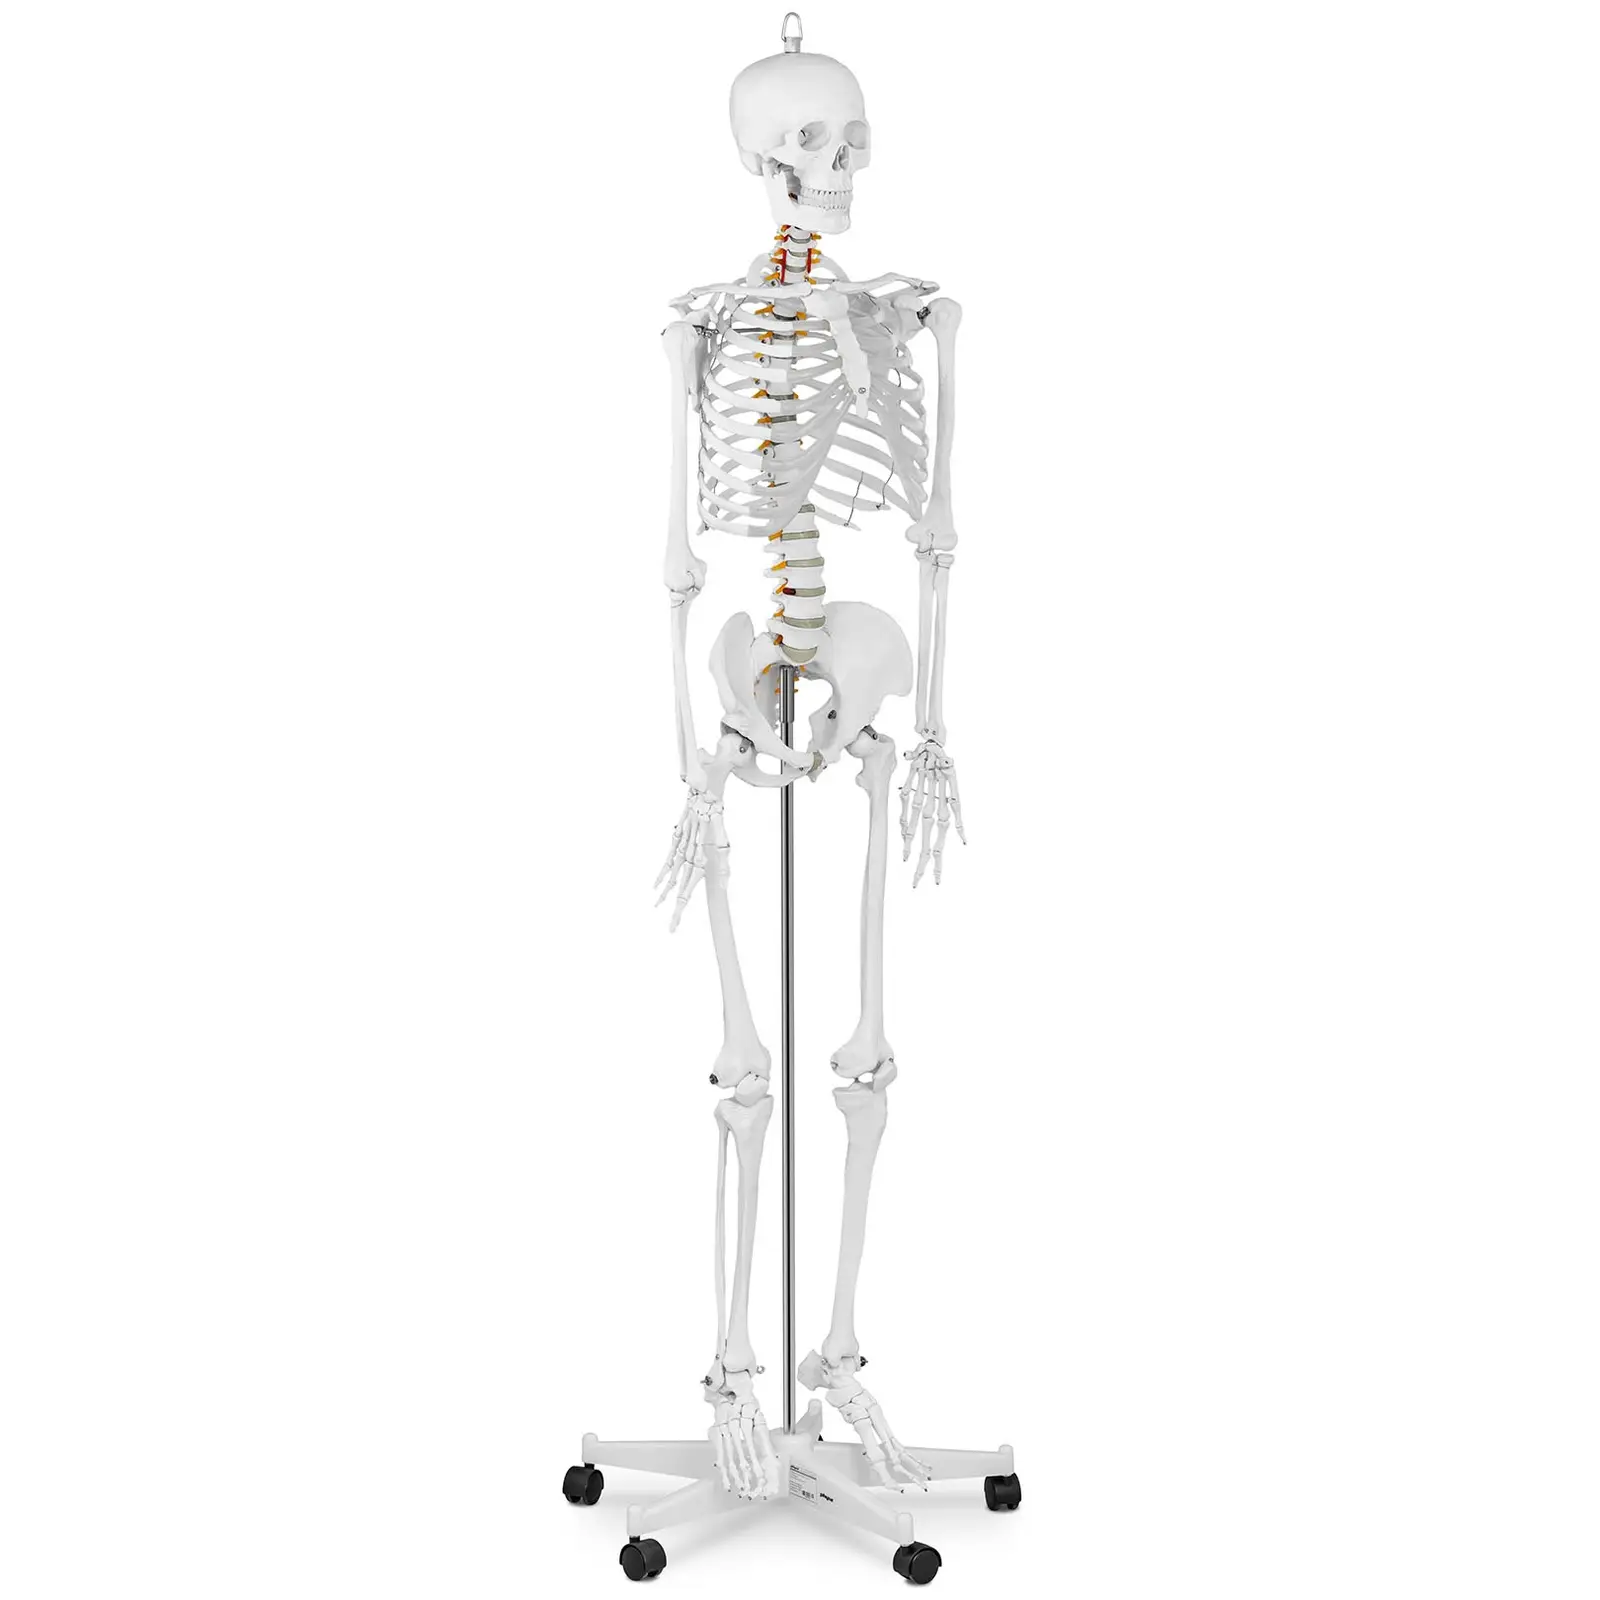 Модел на скелет - в естествен размер